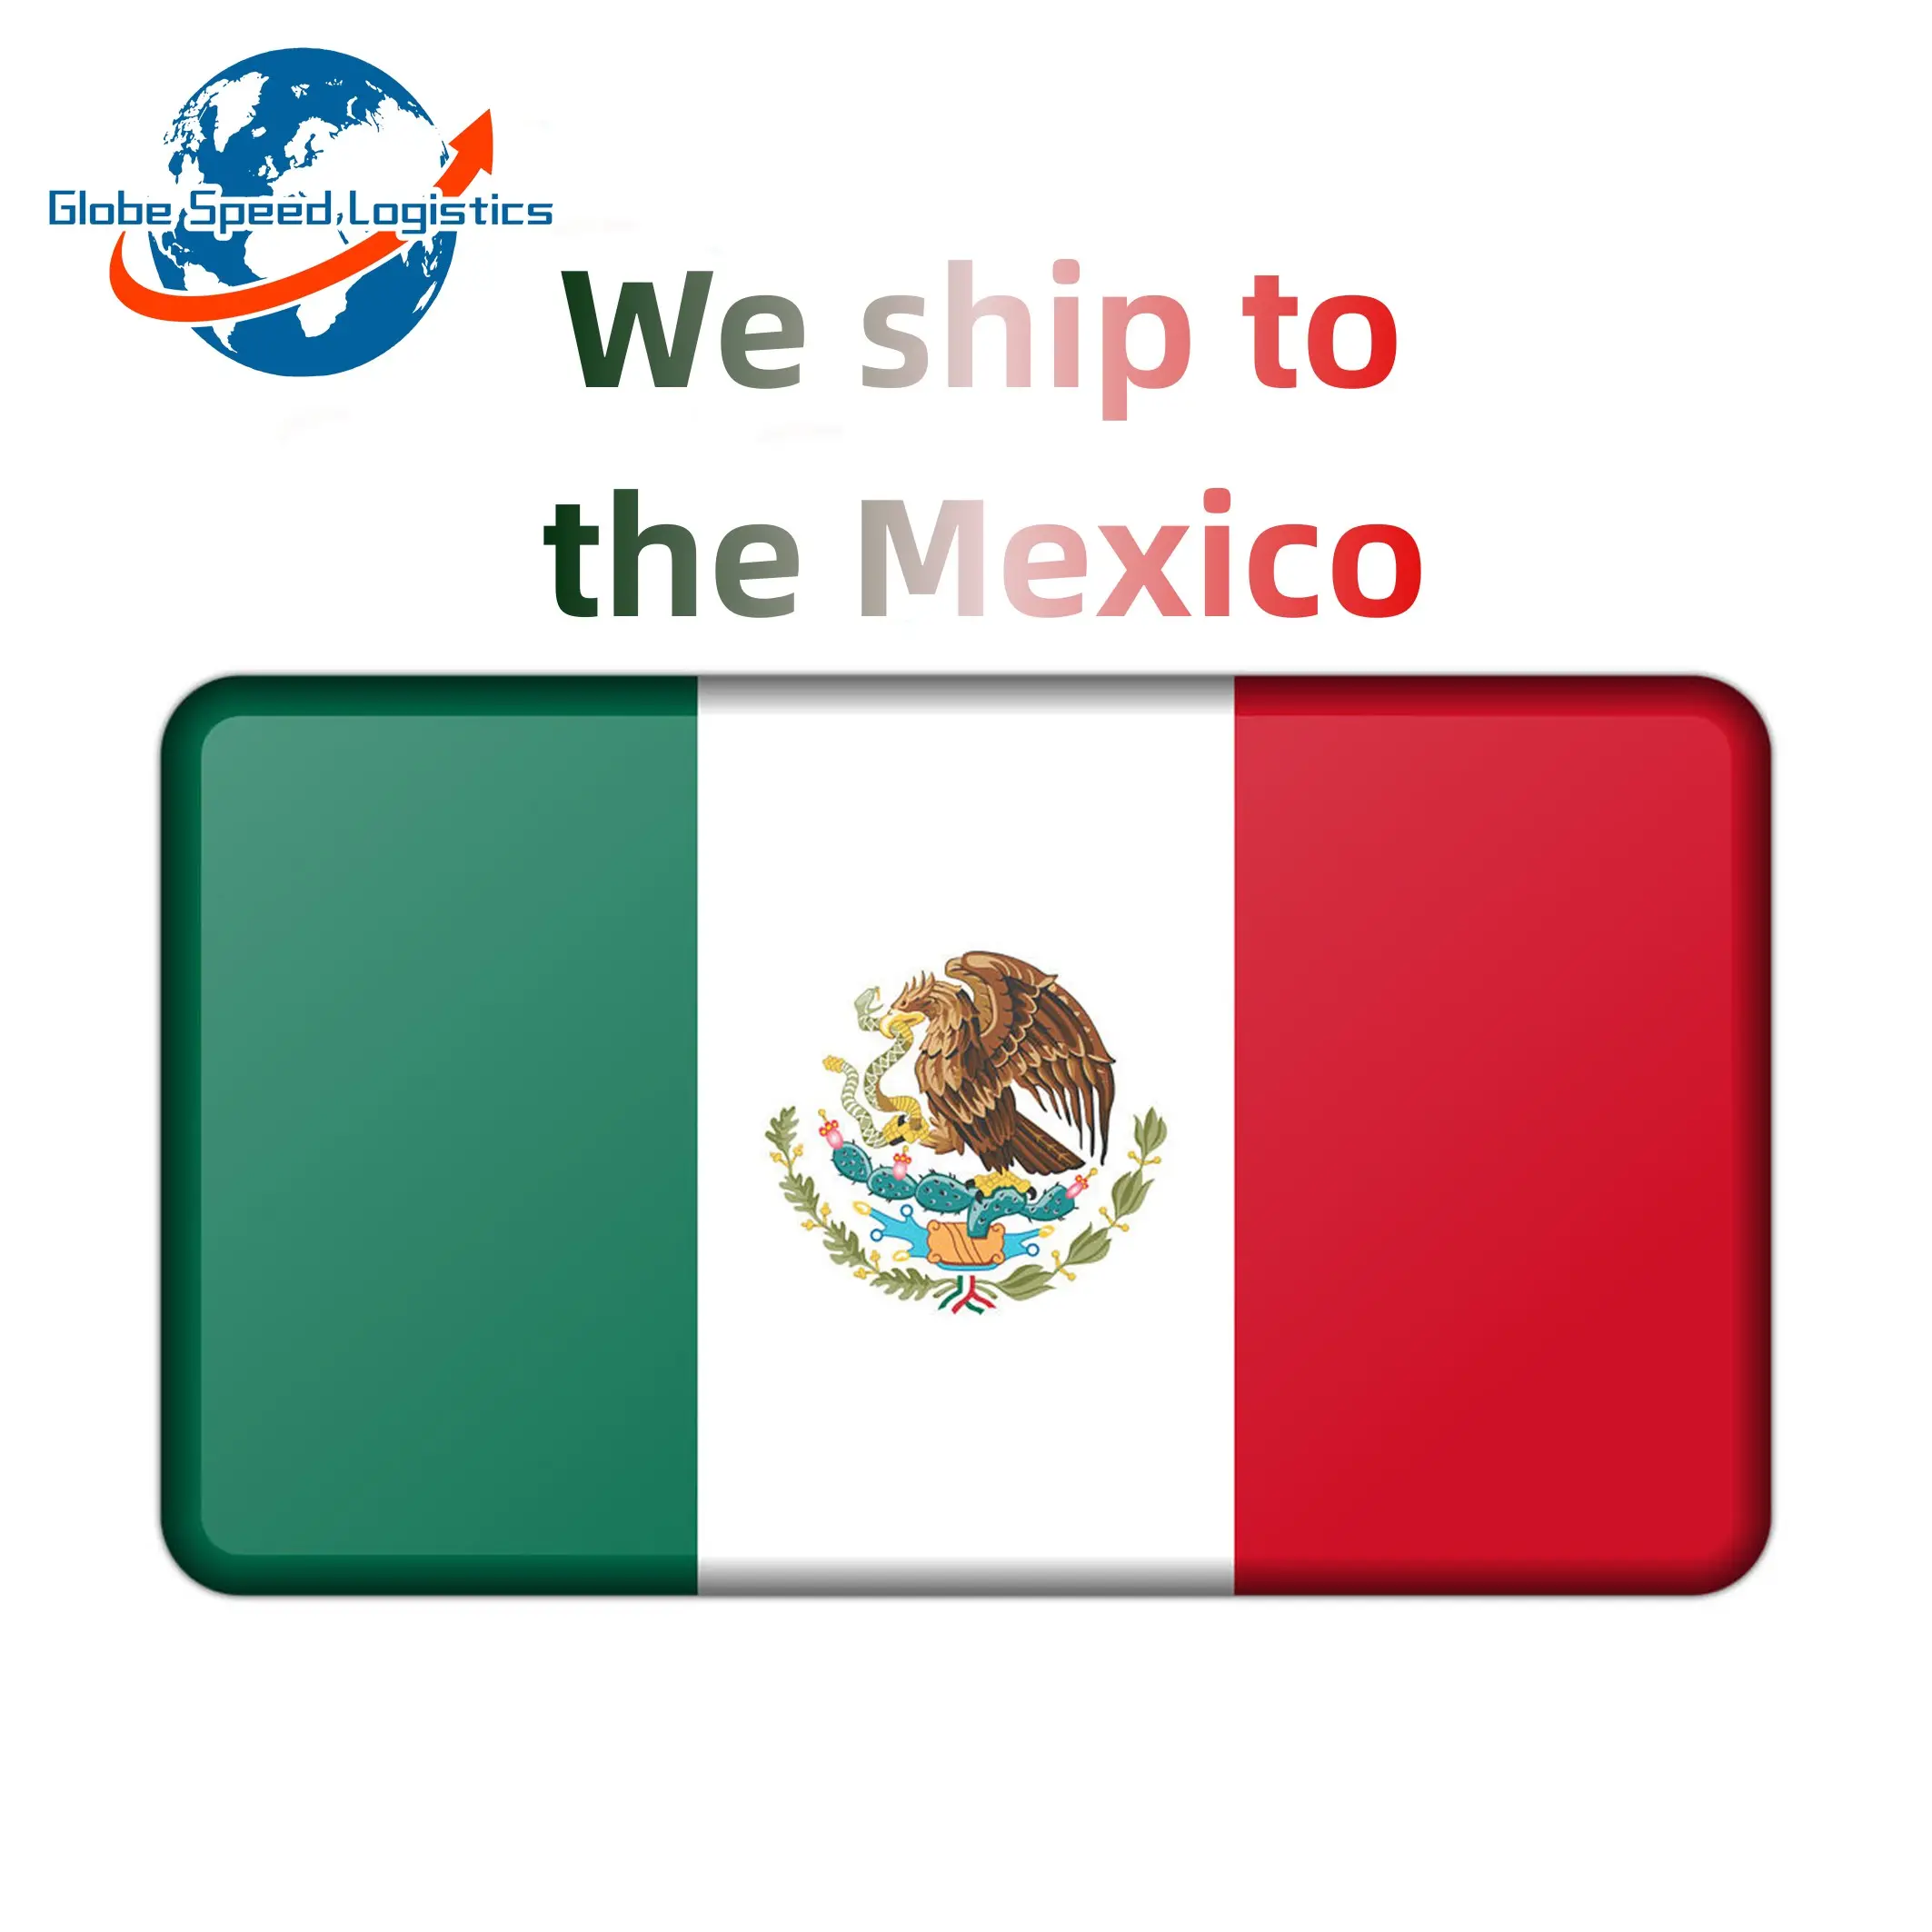 Servicio de Transporte Marítimo puerta a puerta, a México, desde ddp ddu, empresa de envío de China